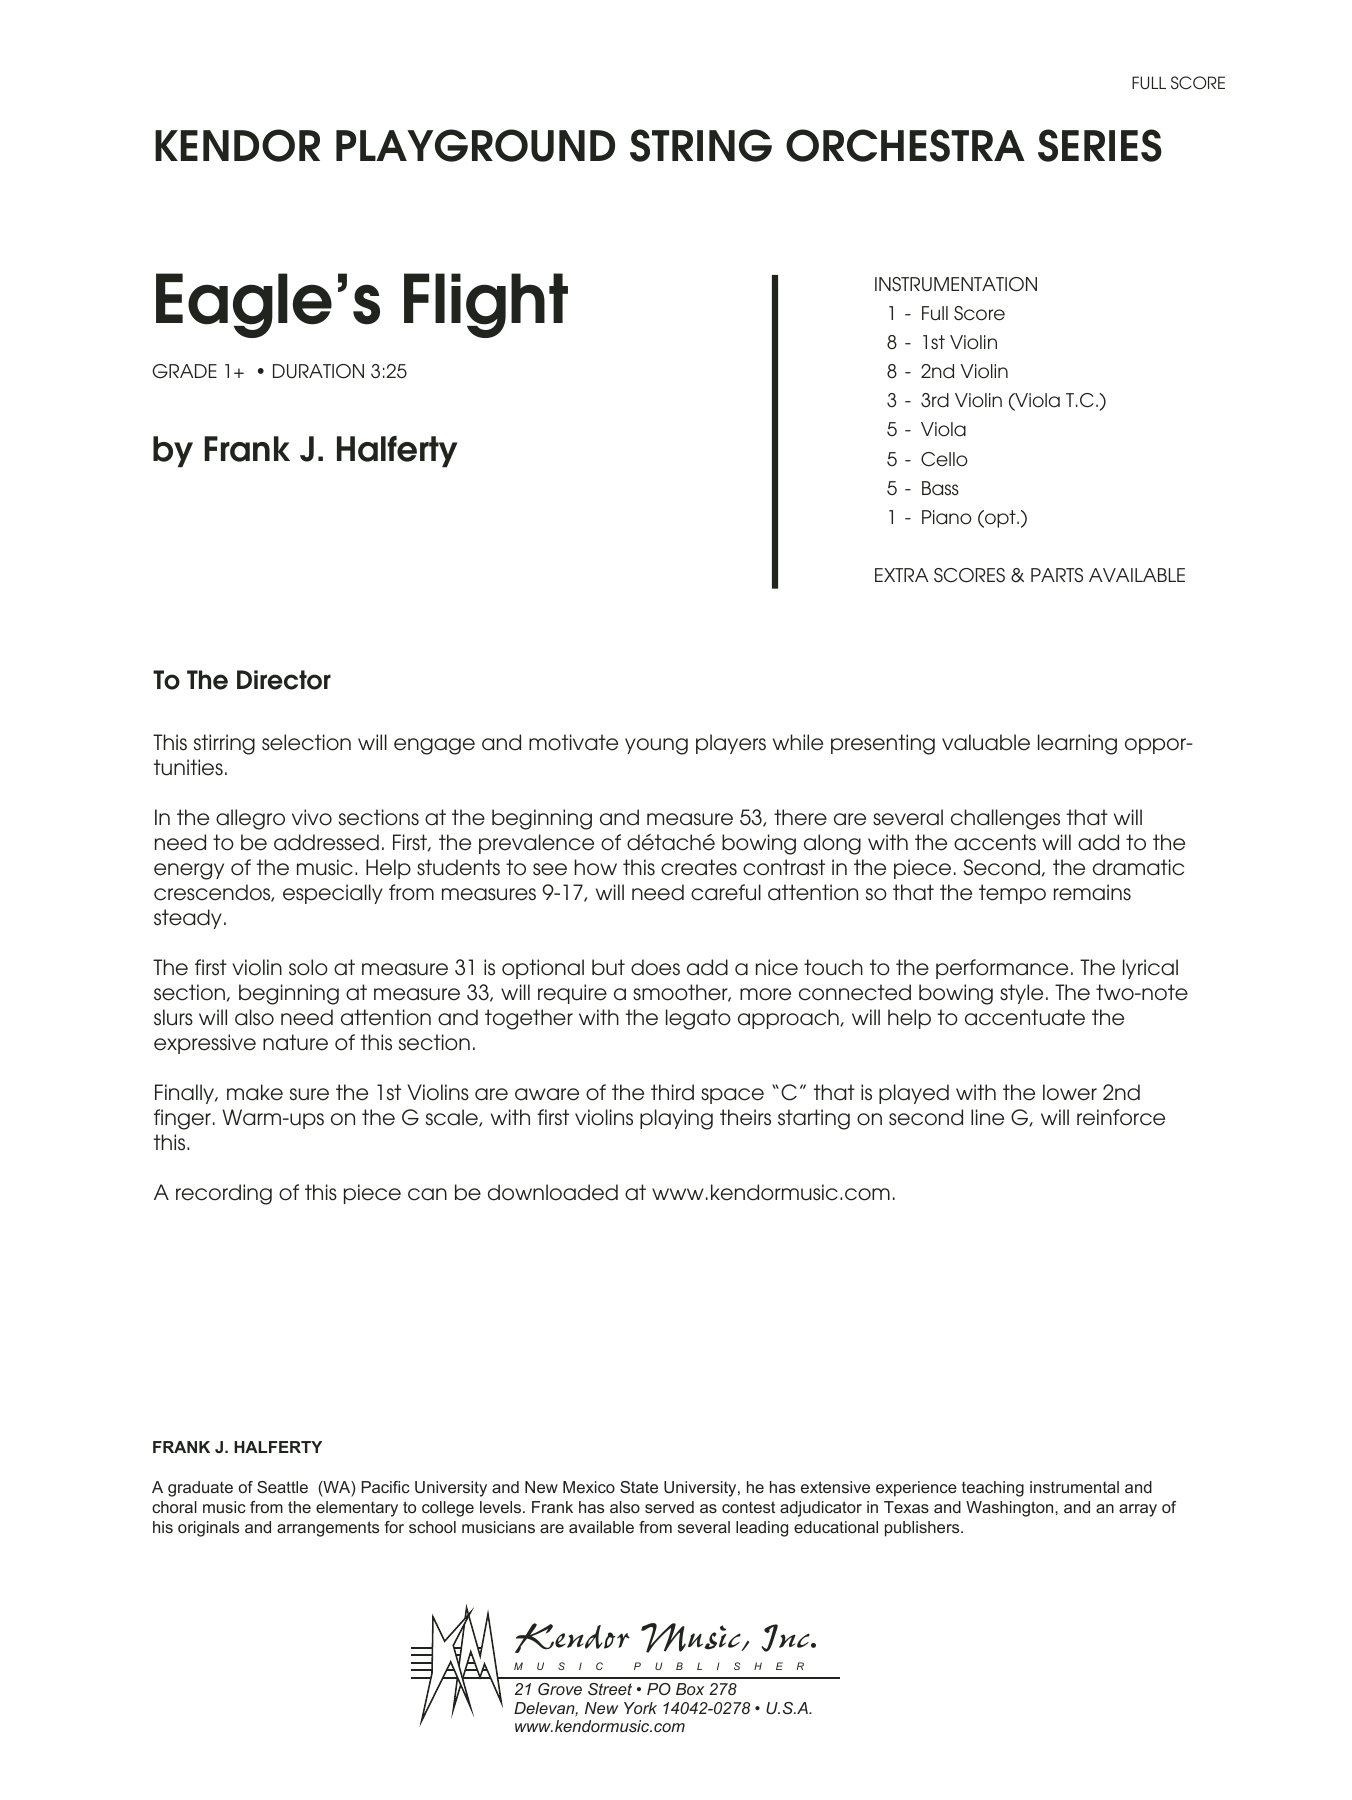 Download Frank J. Halferty Eagle's Flight - Full Score Sheet Music